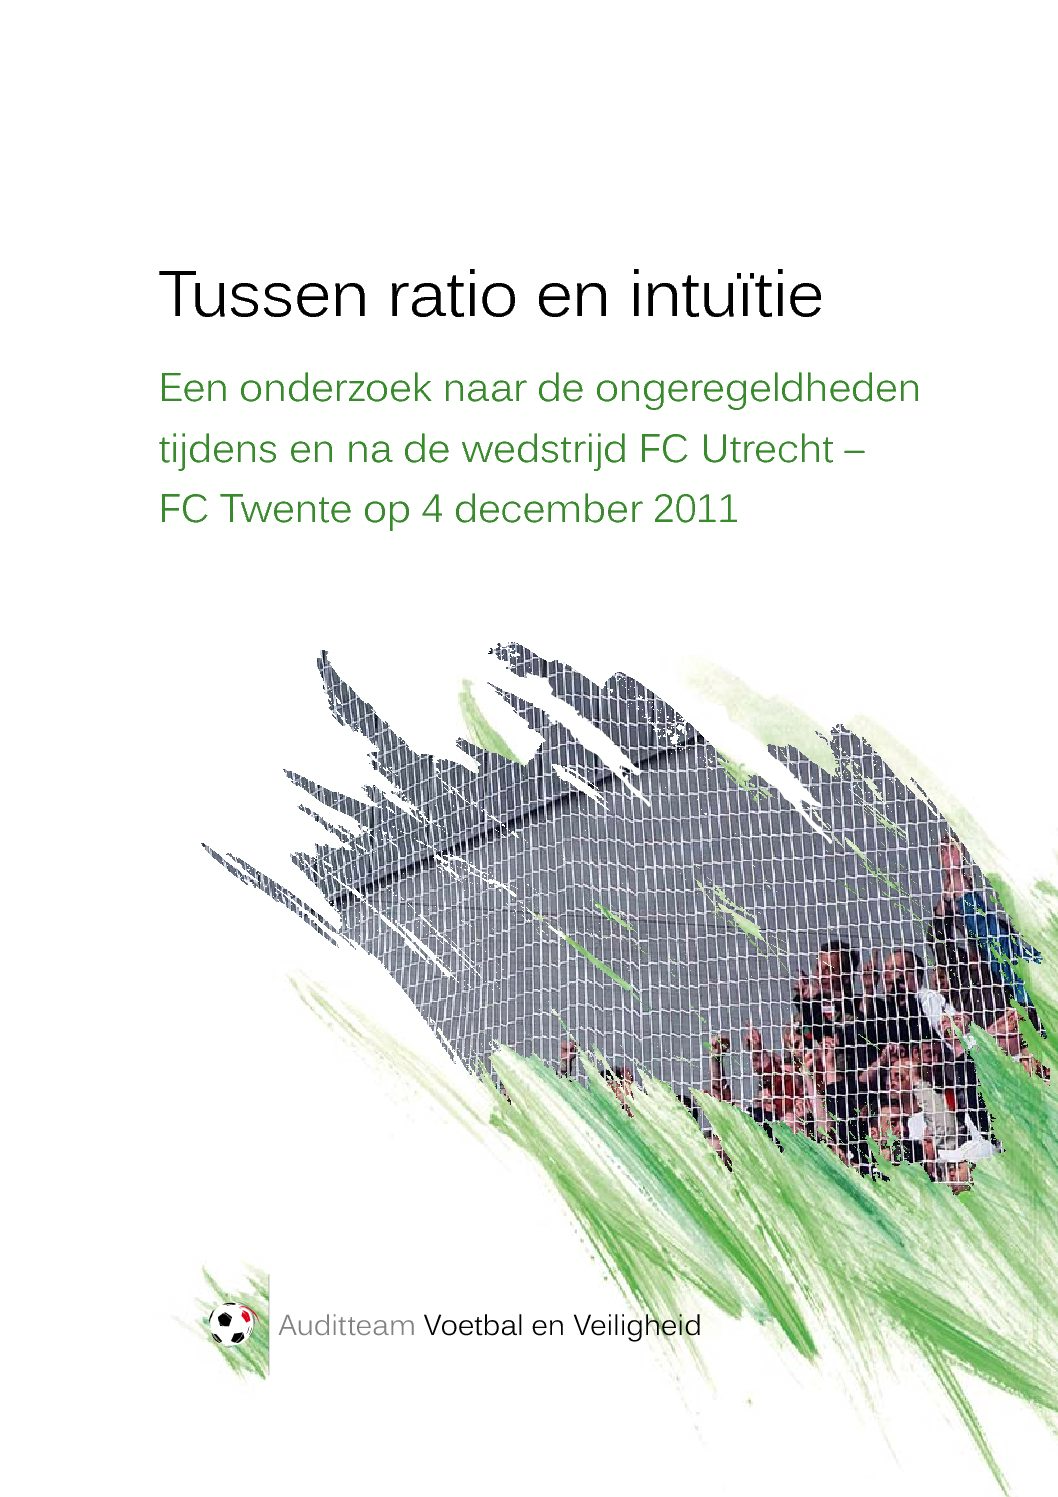 Tussen ratio en intuïtie: Een onderzoek naar de ongeregeldheden tijdens en na de wedstrijd FC Utrecht – FC Twente op 4 december 2011, 2012.